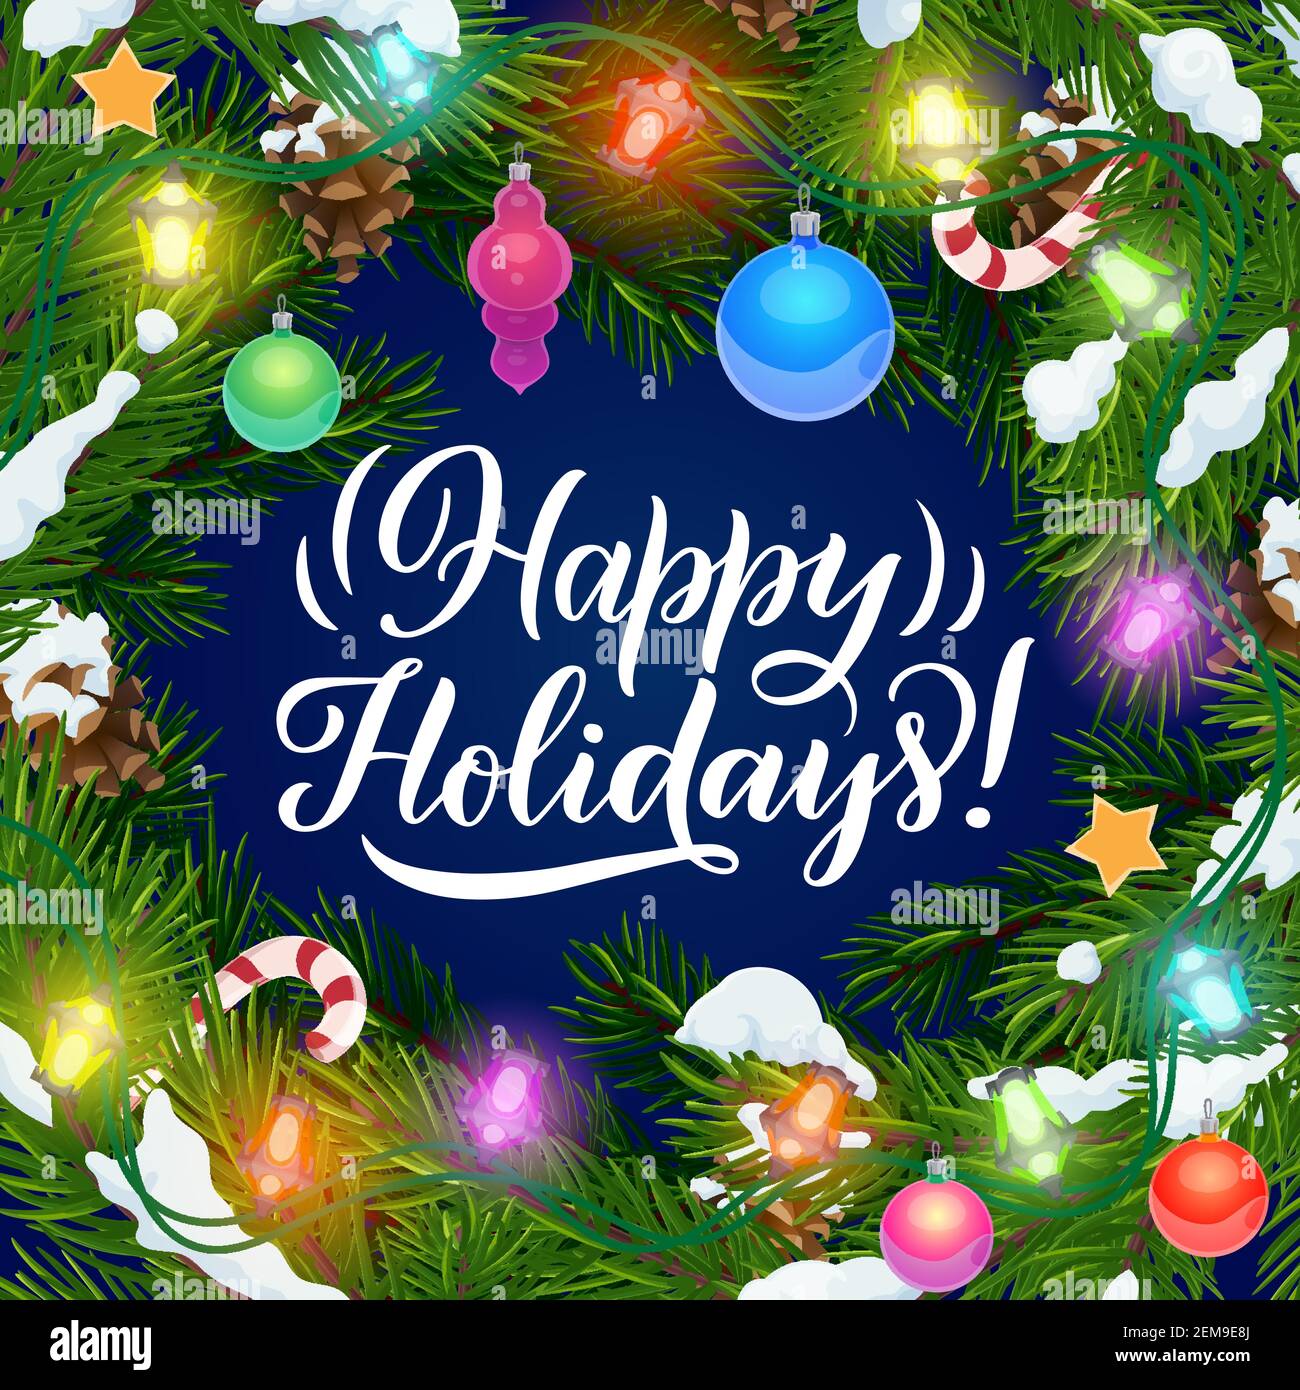 Happy Holidays, poster vettoriale con le luci dell'albero di Natale e ornamenti decorativi. Corona di abete xmas con stelle dorate, palle, canne candite e pino Illustrazione Vettoriale